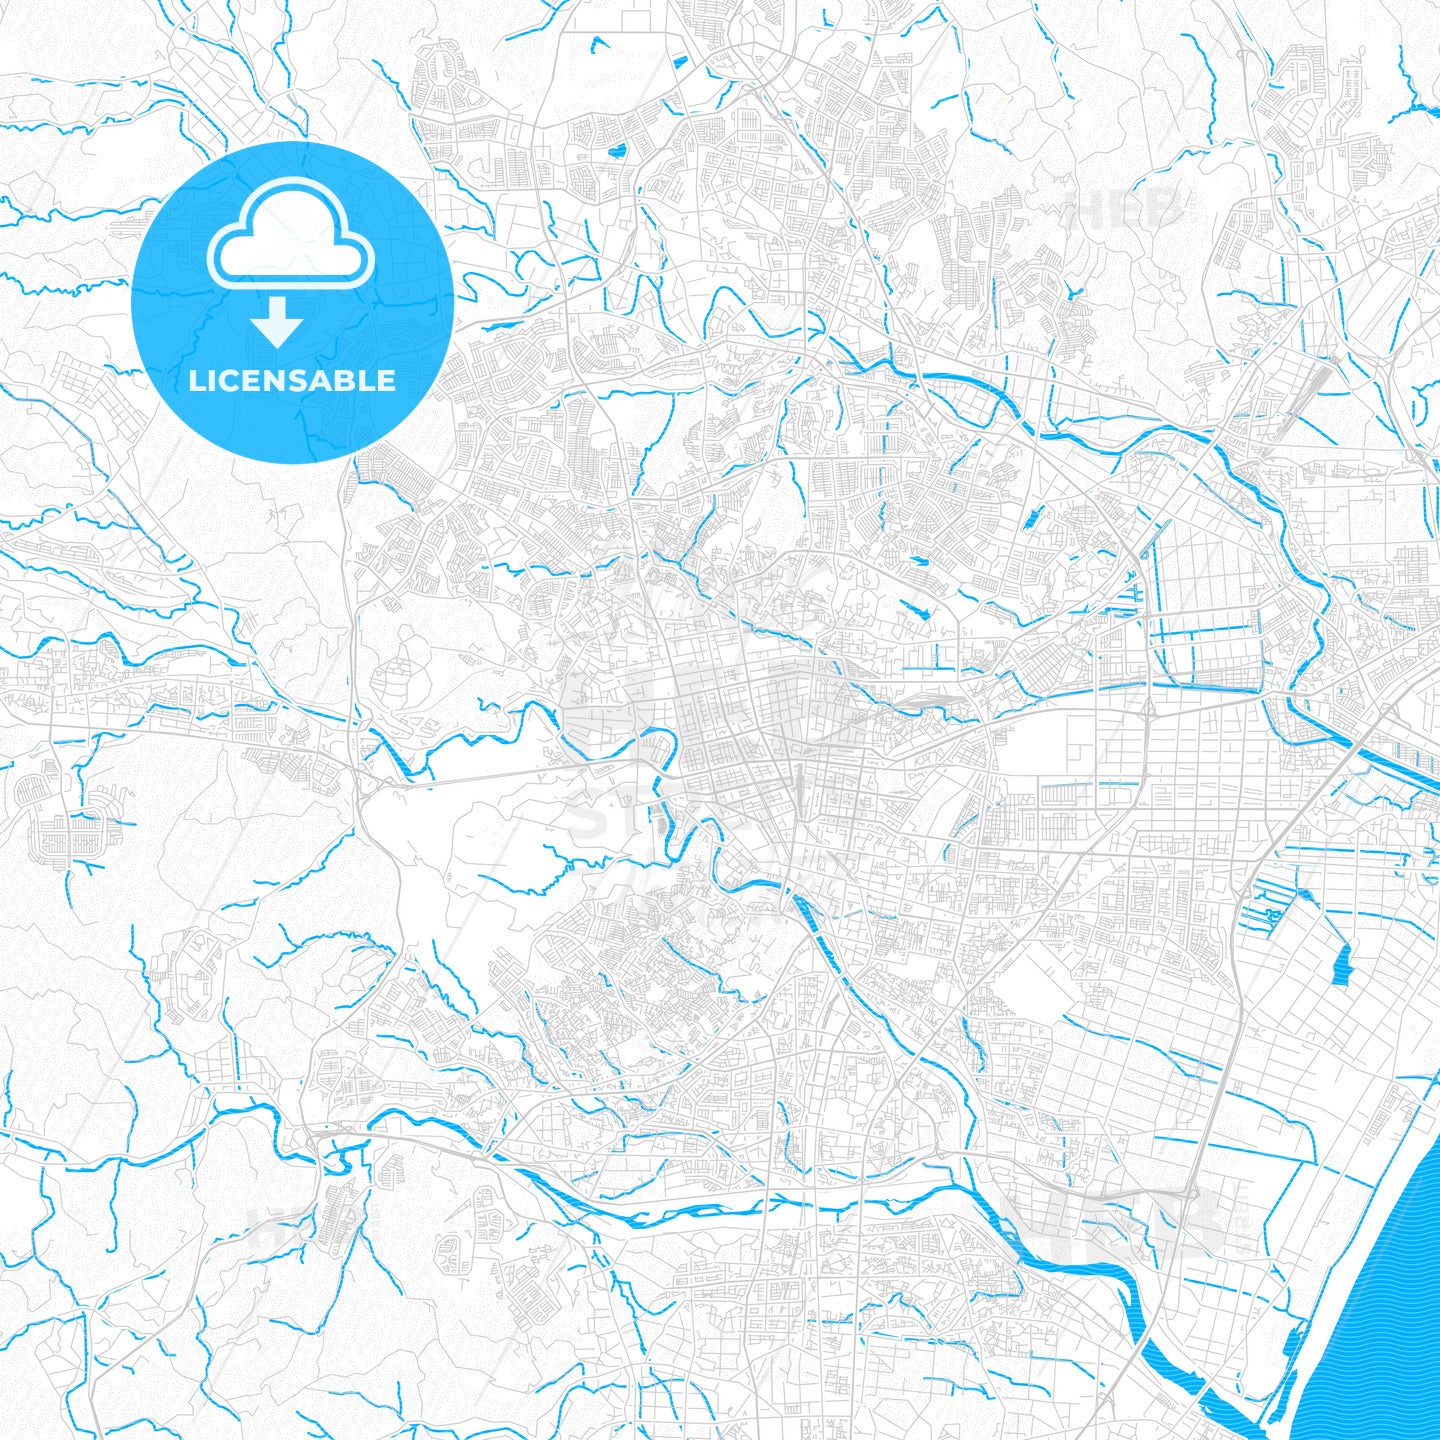 Sendai, Japan PDF vector map with water in focus